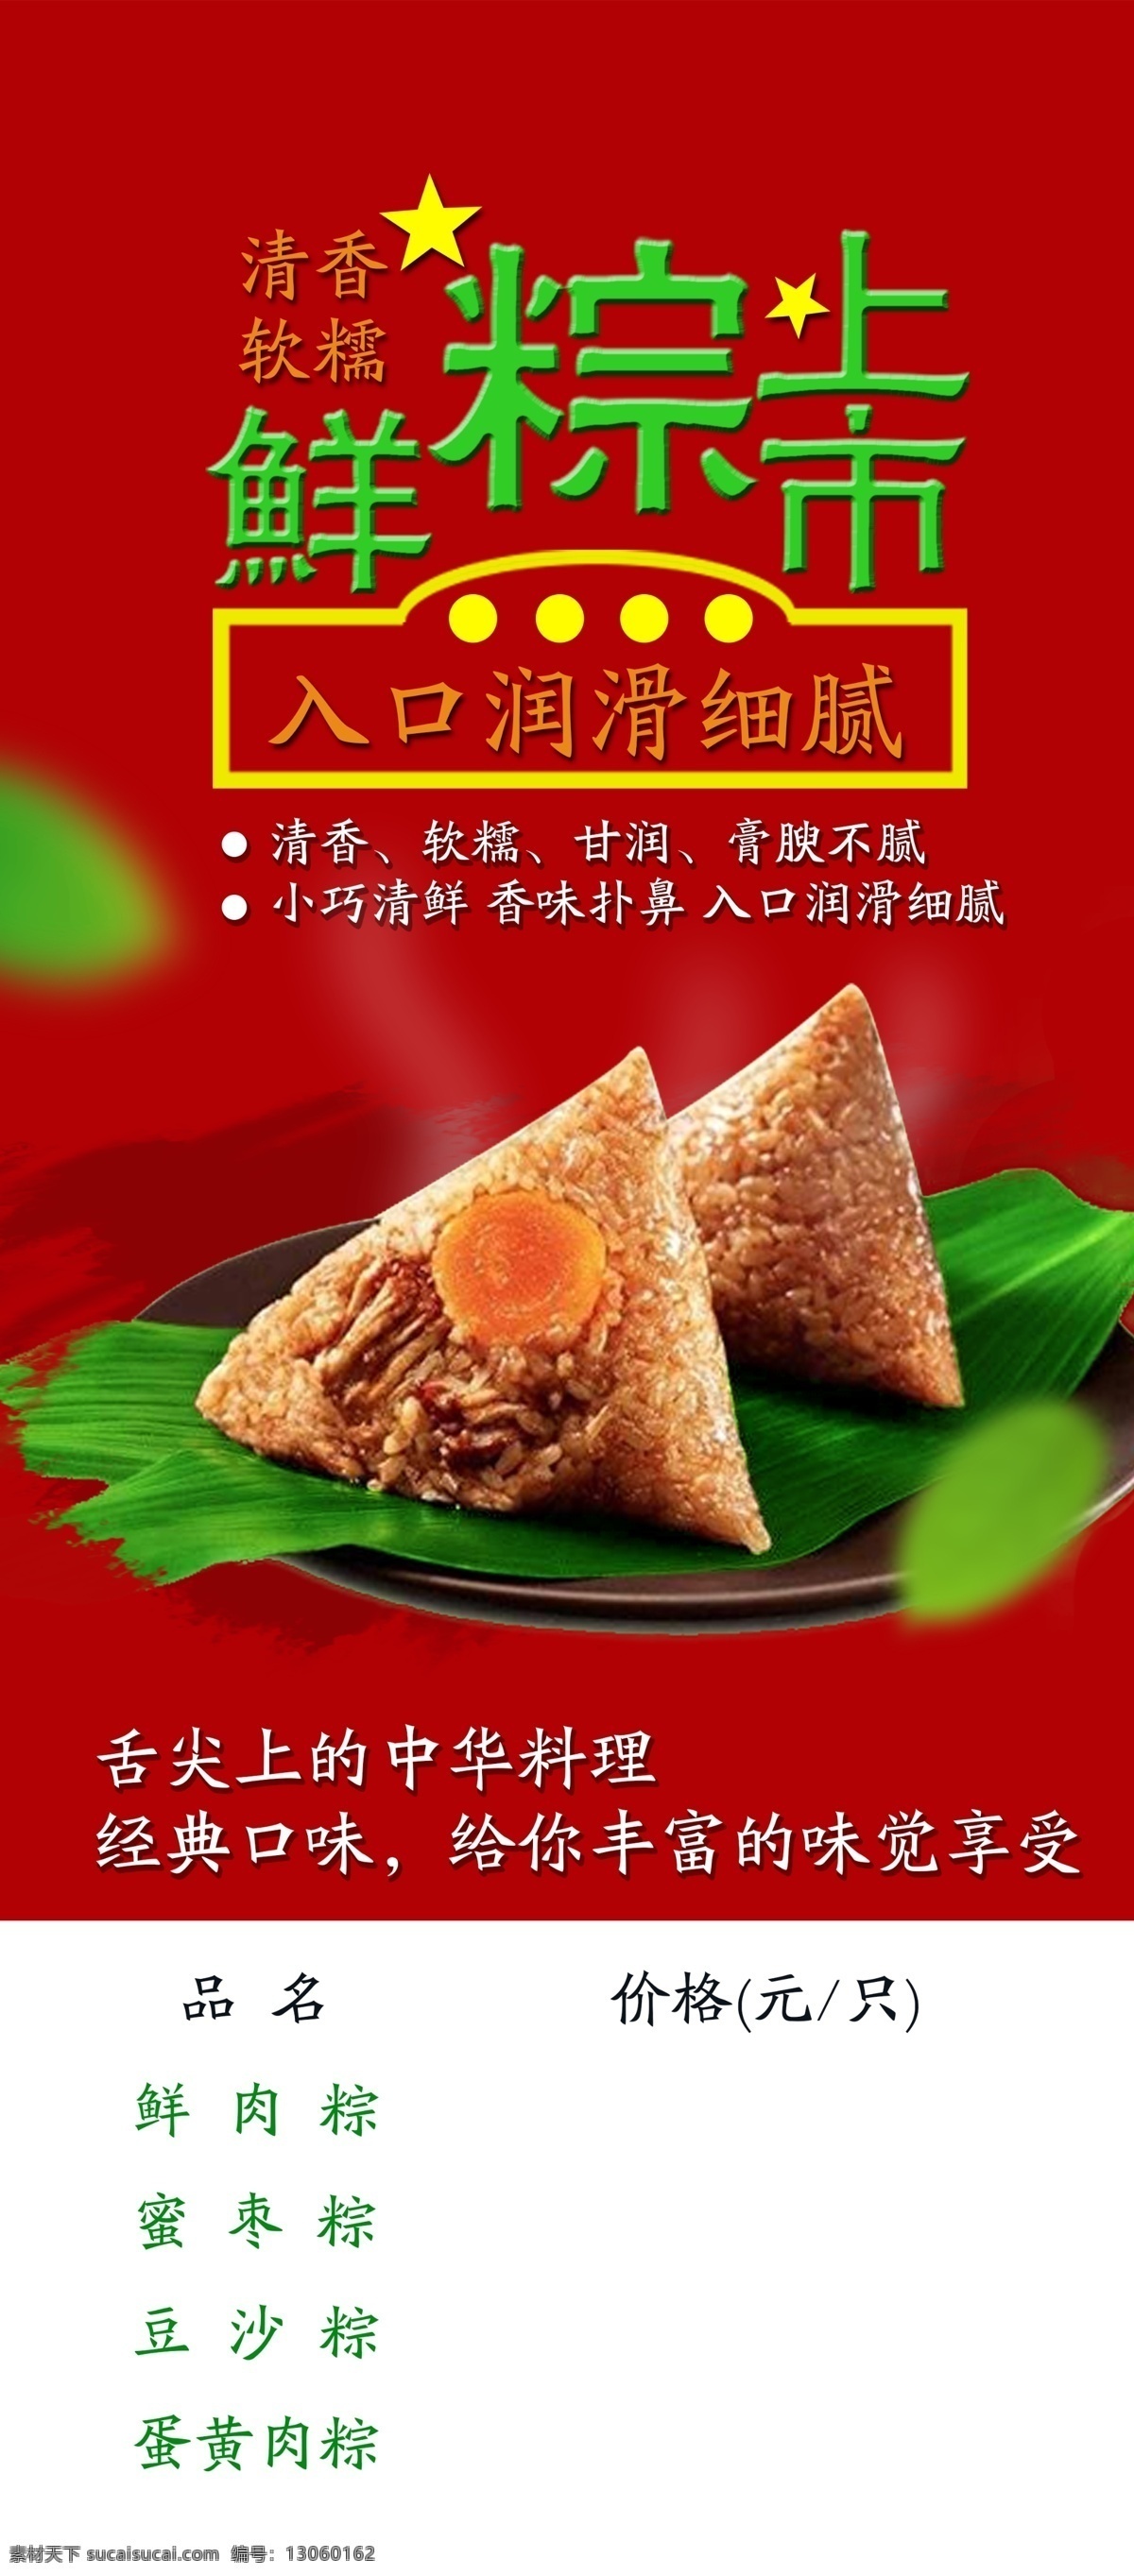 粽子海报 粽子 肉粽 红枣粽 创意简单 粽子促销 简洁 端午节 屈原